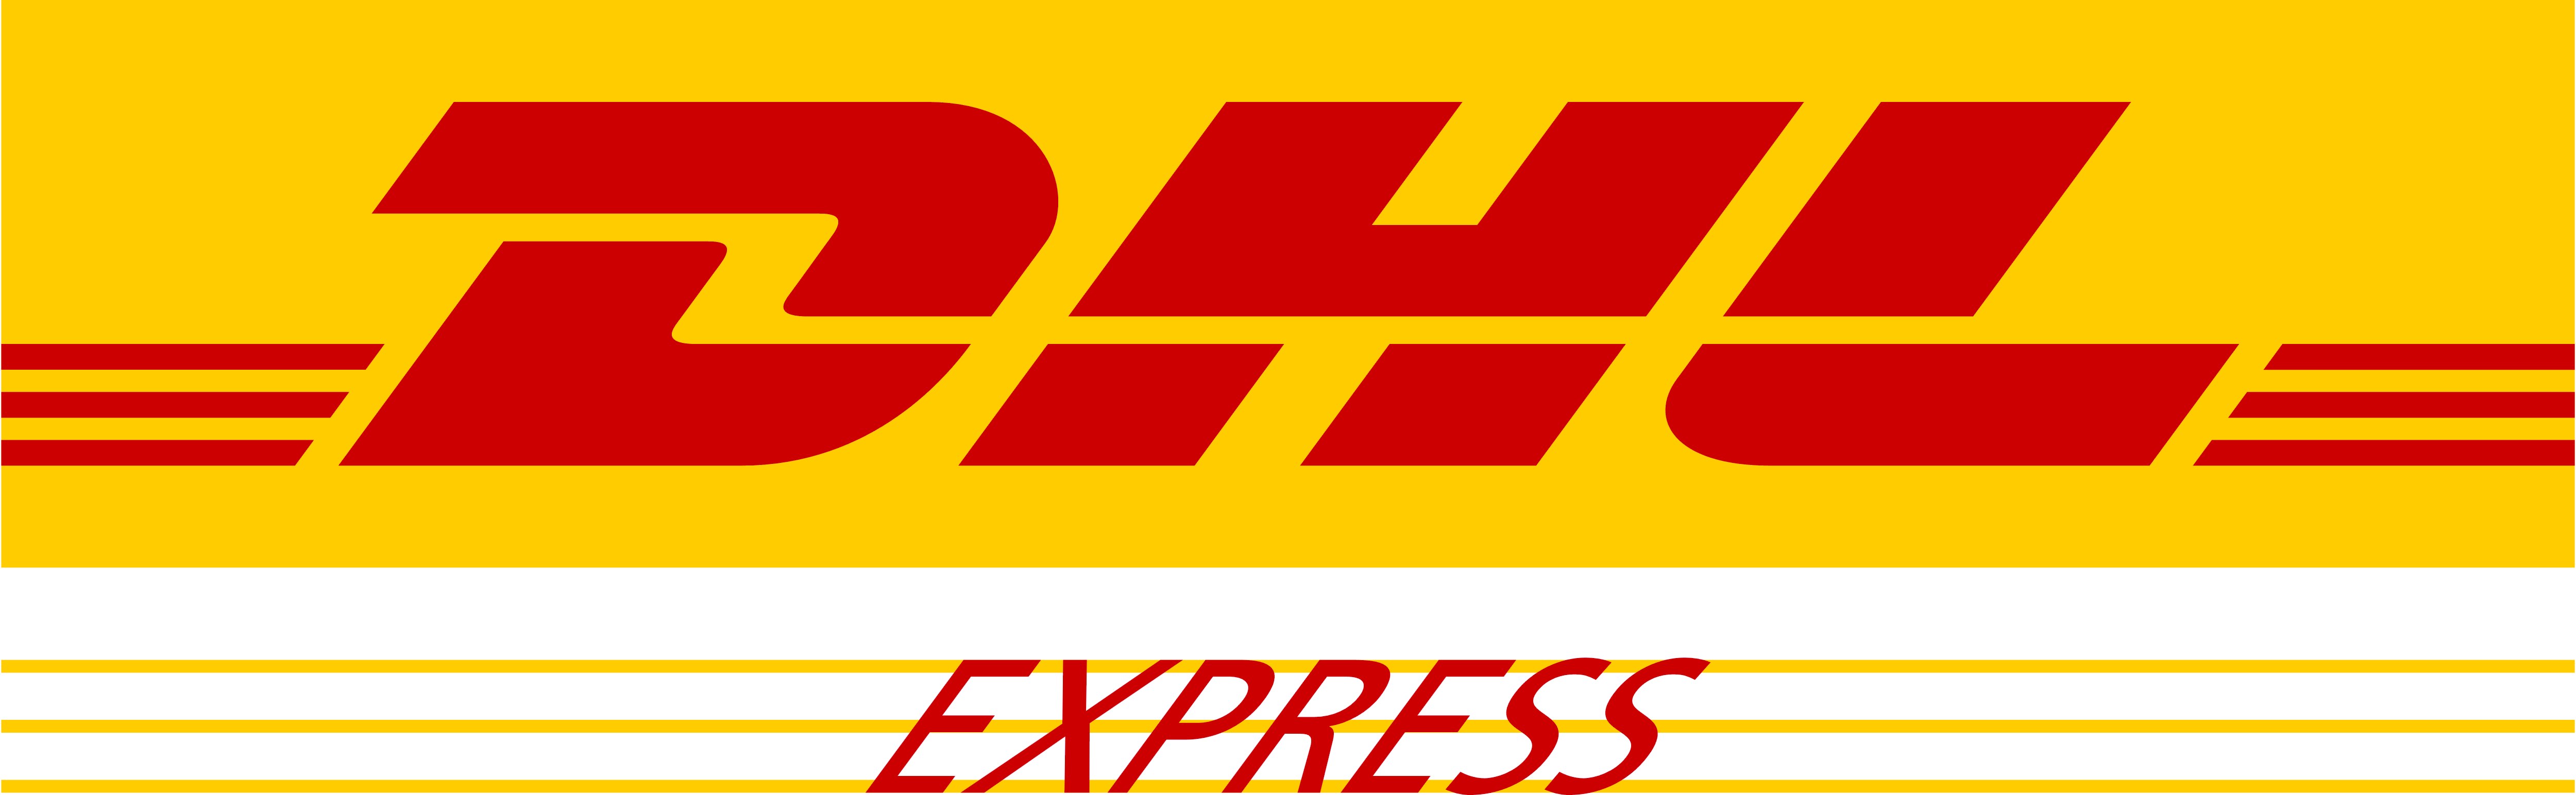 DHL – Logos Download